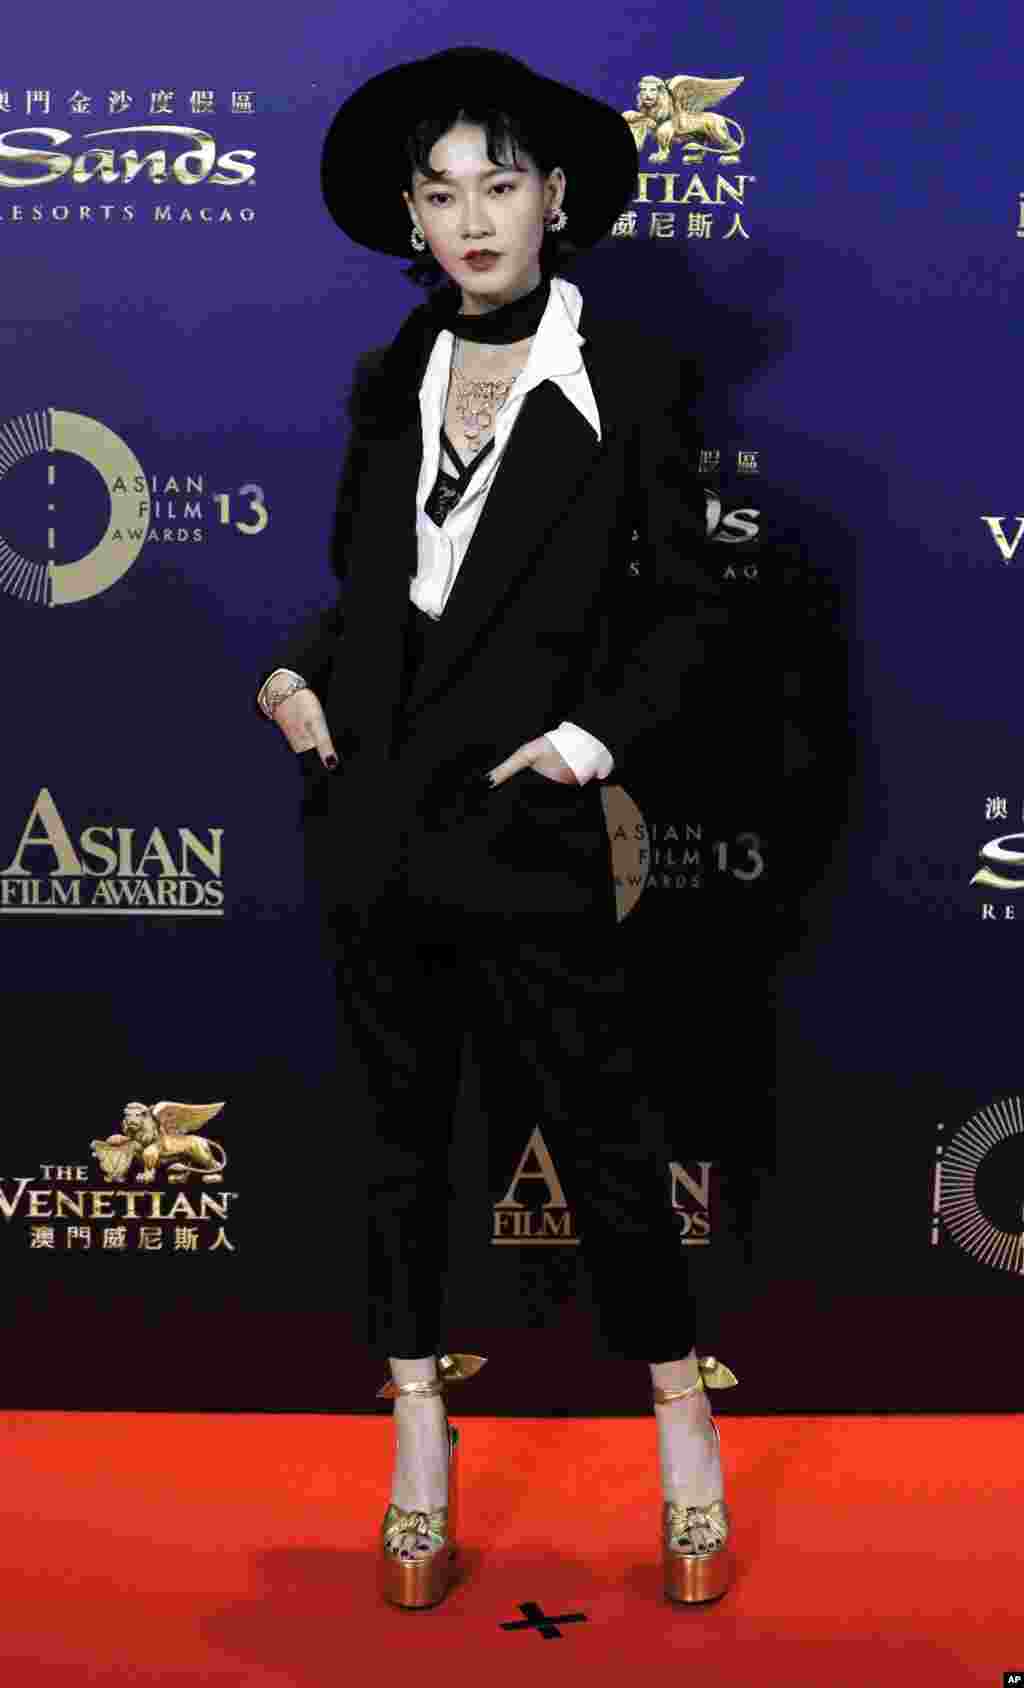 فیش لیو، بازیگر مالزیایی، در مراسم فرش قرمز جشنواره فیلم های آسیایی در هنگ کنگ